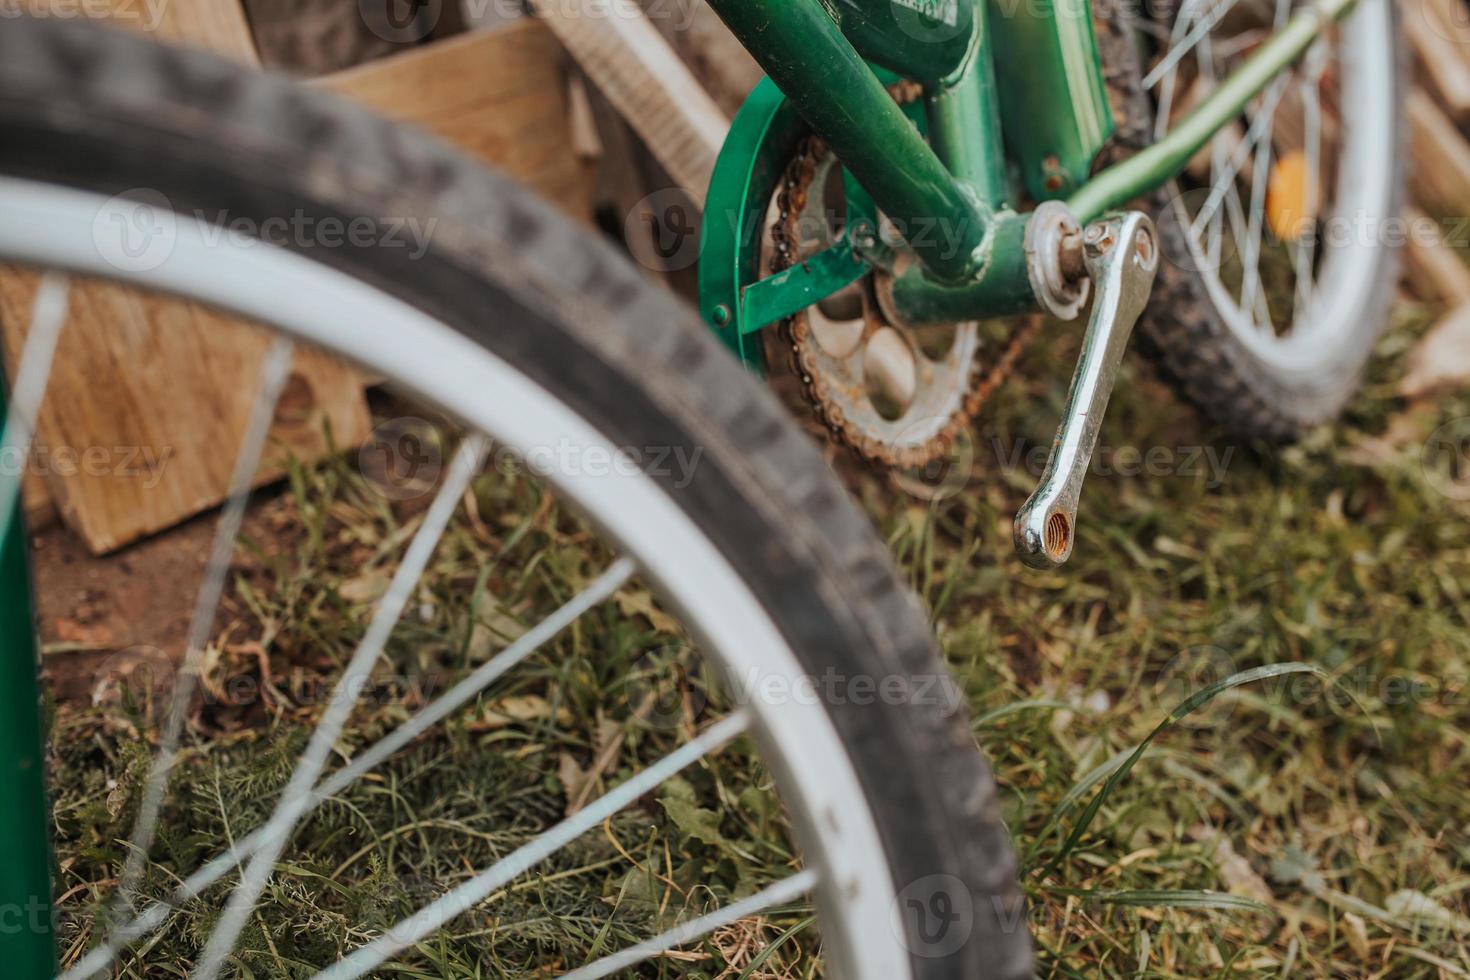 vecchia bici abbandonata rotta - arrugginita non mantenuta senza pedali foto